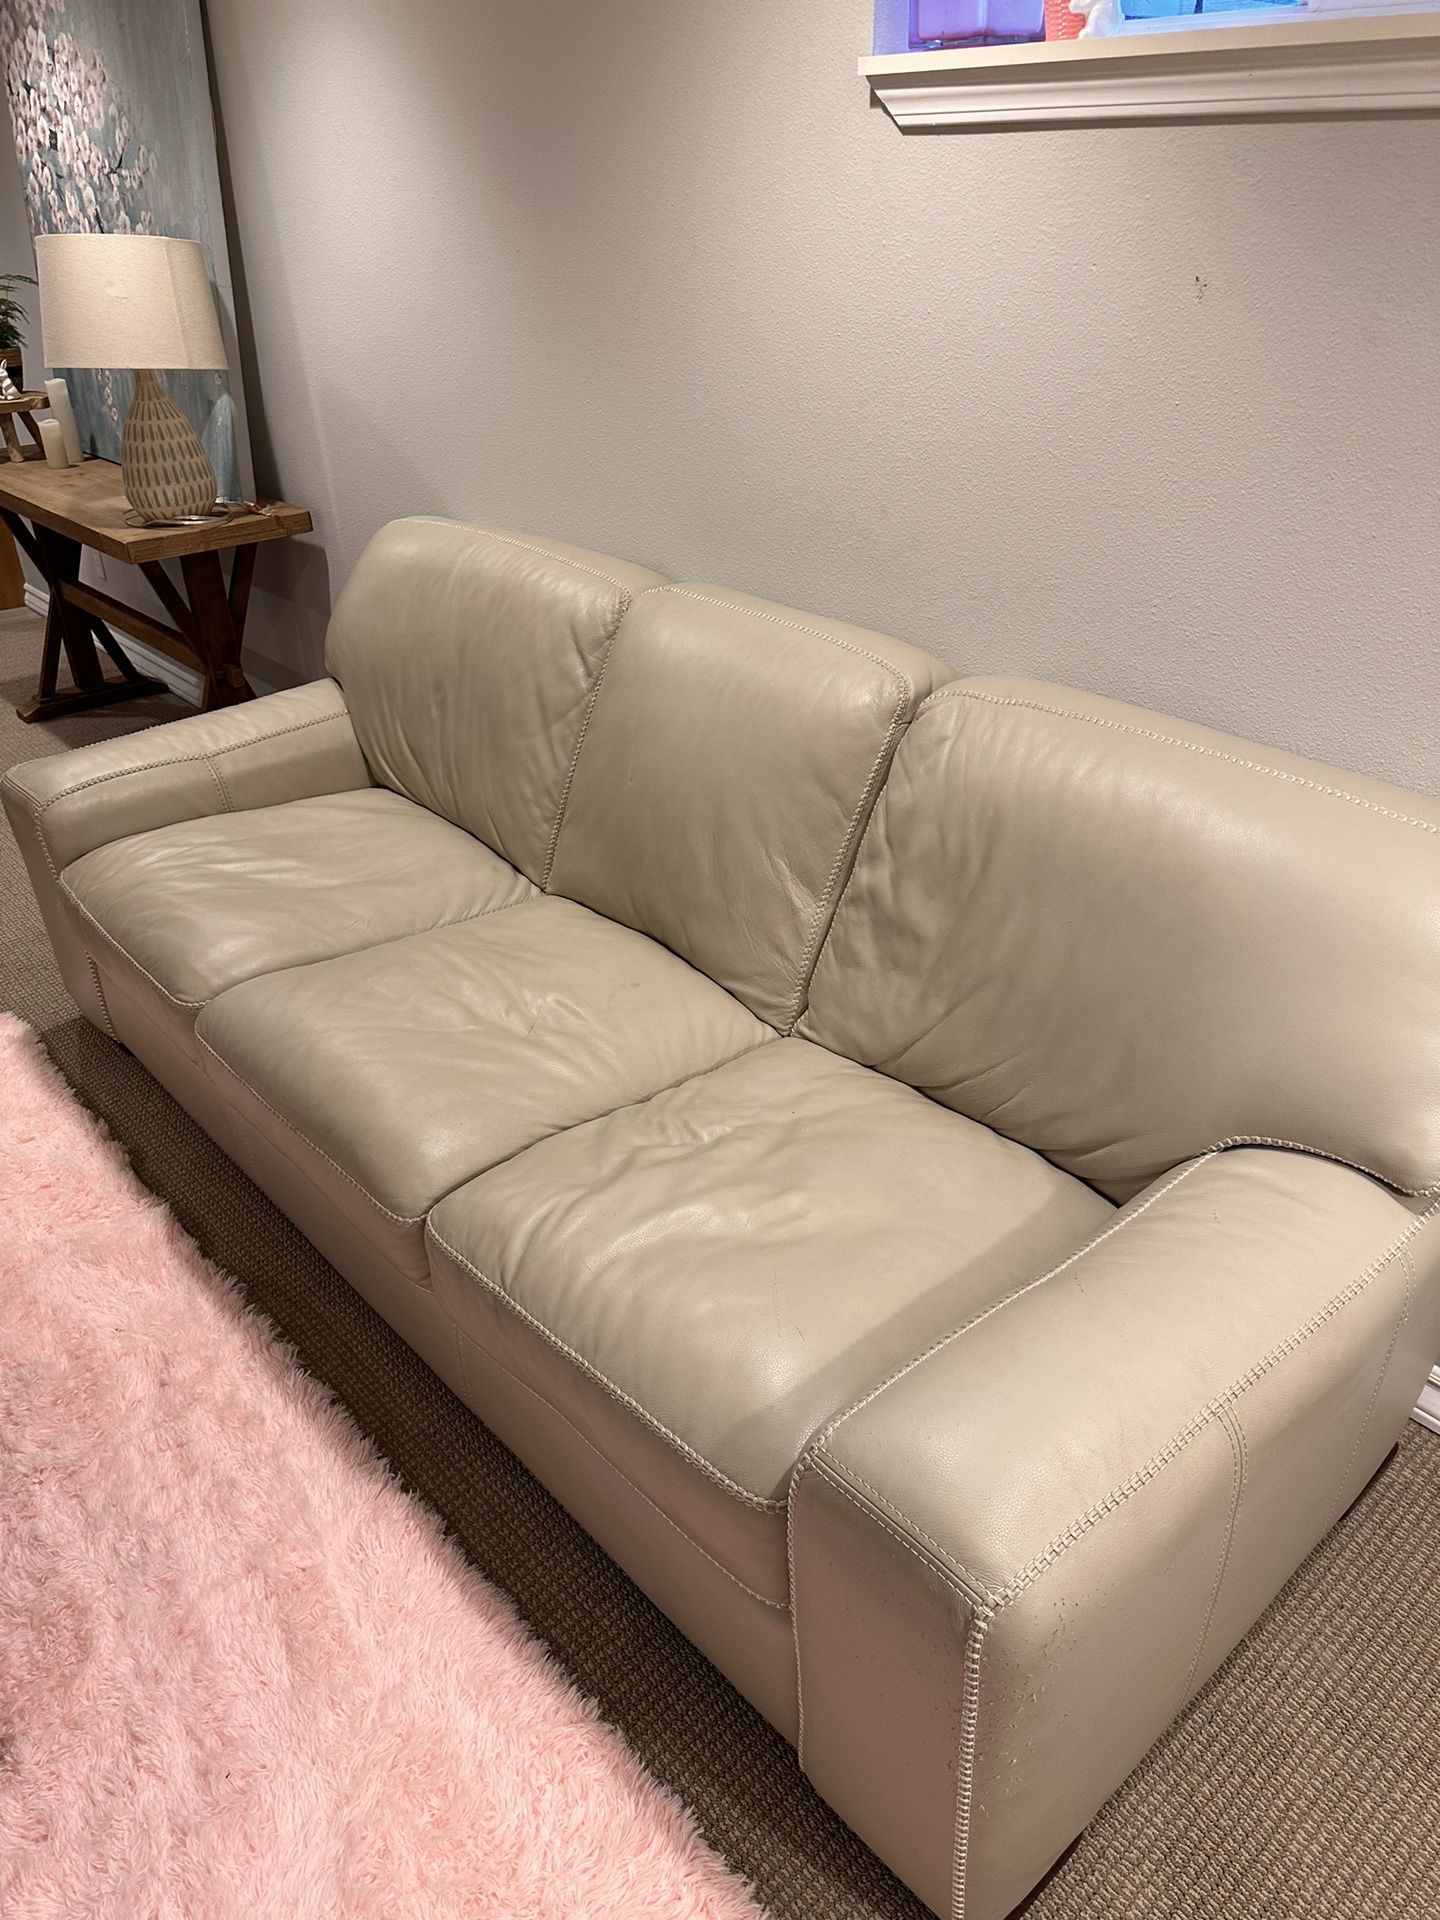 Cream Color Sofa